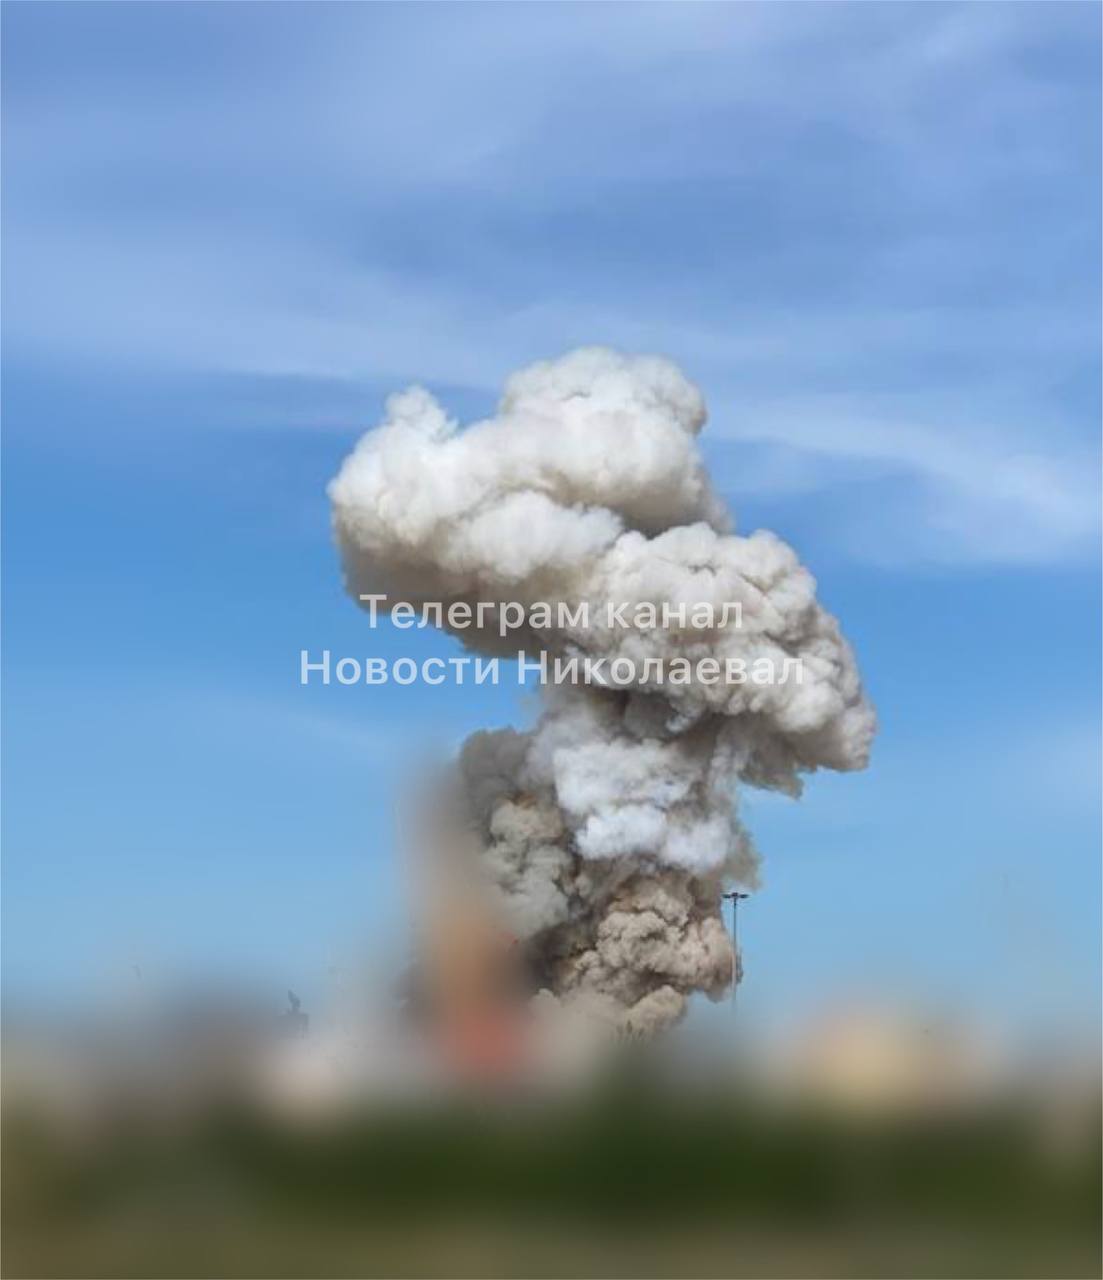 Мощный взрыв в Николаеве: очевидцы сообщают о большом столбе дыма и пожаре (ФОТО) 5